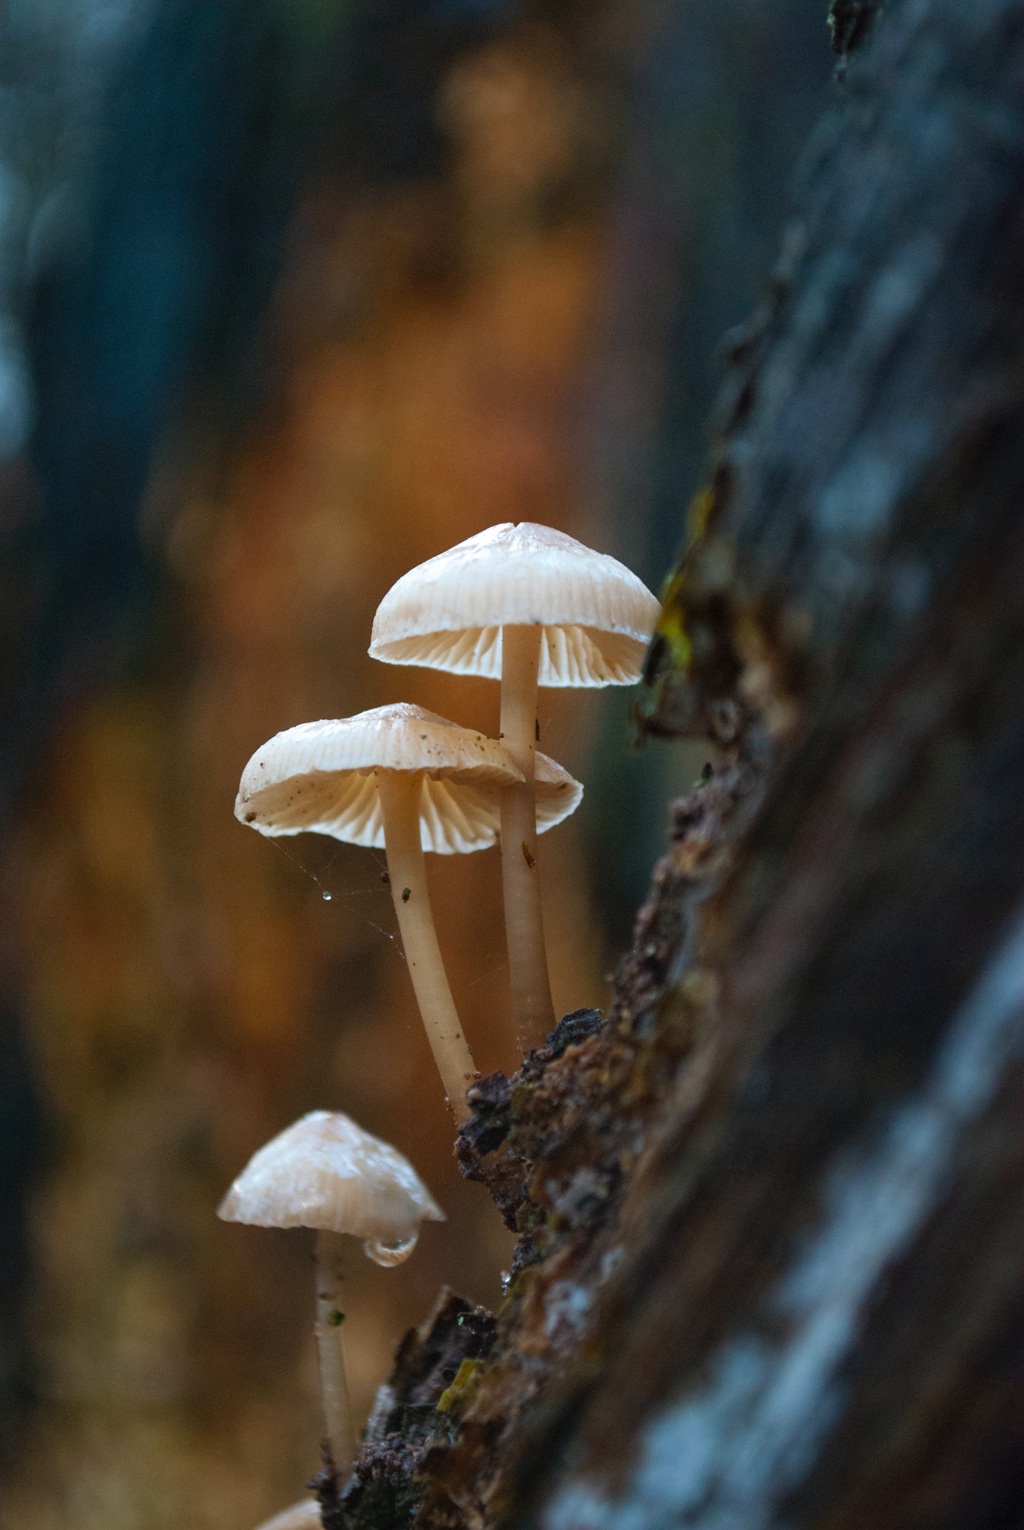 蘑菇图片大全高清图片 林间蘑菇照片大全